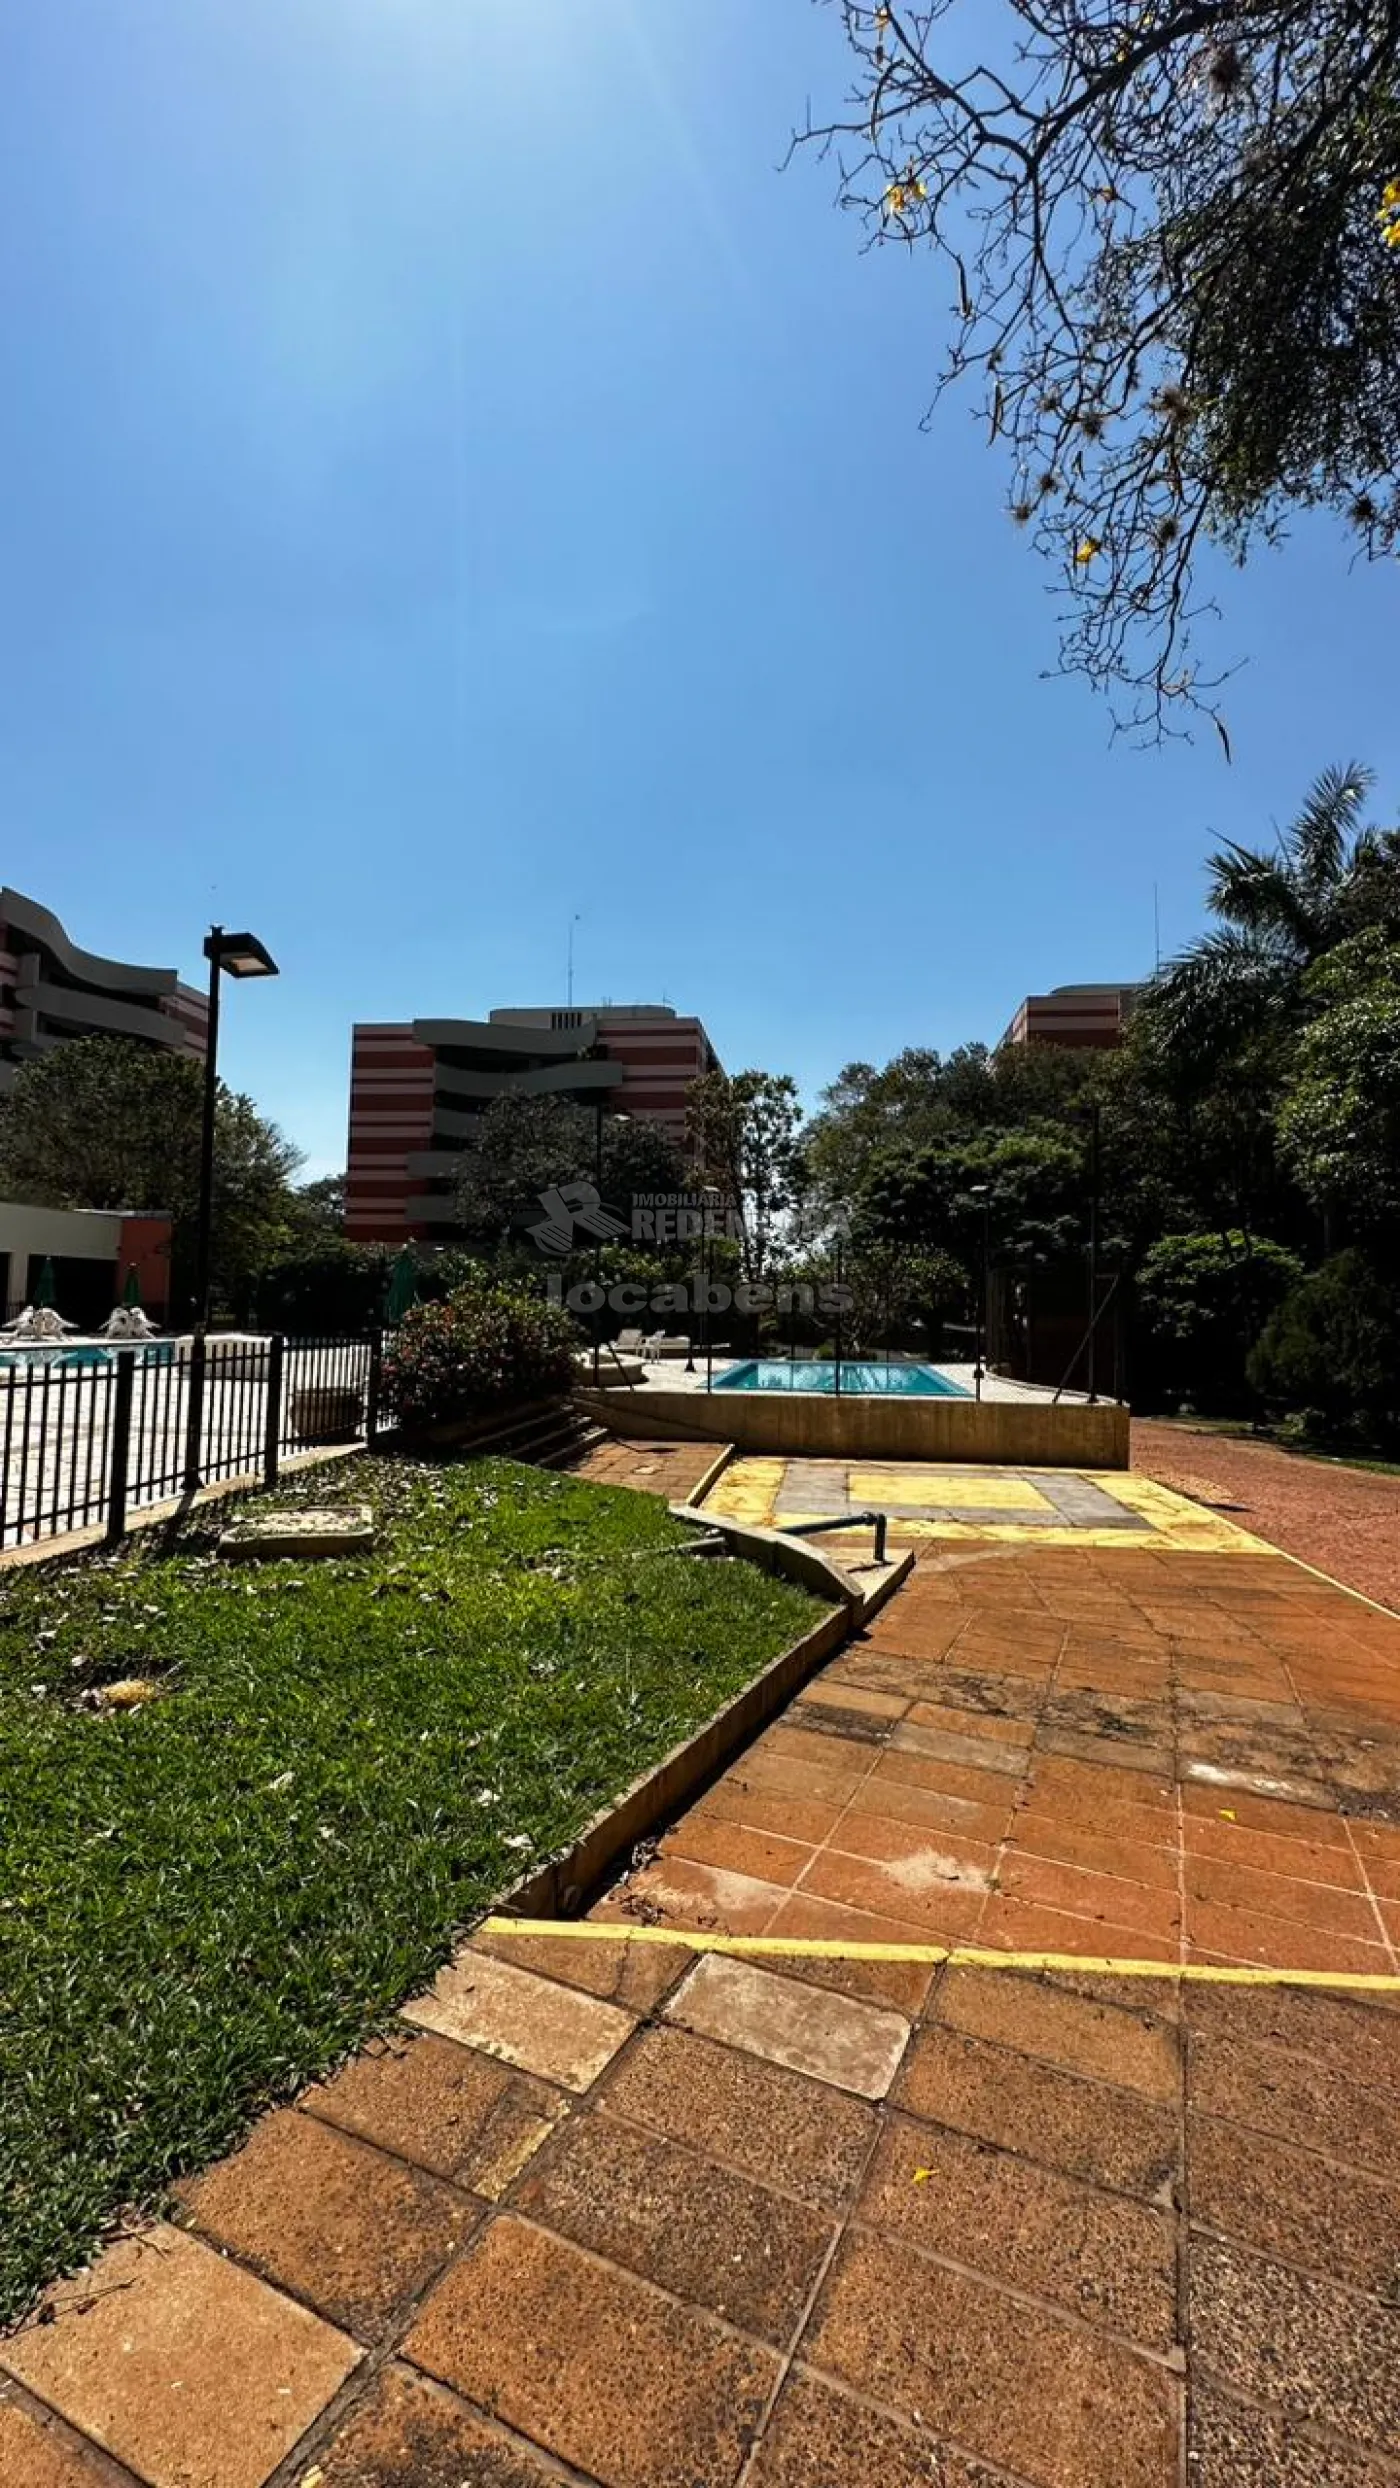 Comprar Apartamento / Padrão em São José do Rio Preto apenas R$ 850.000,00 - Foto 34